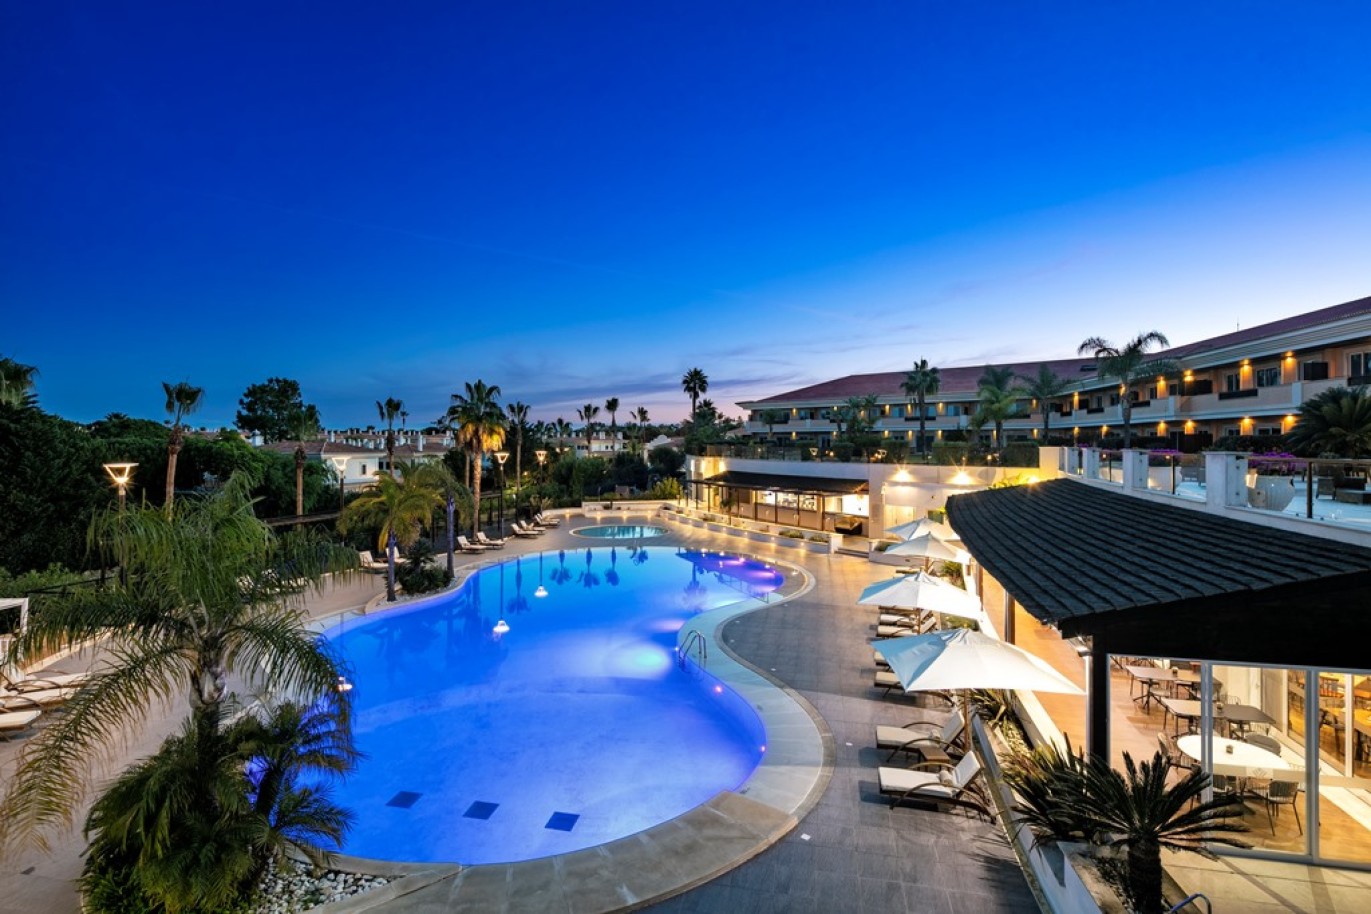 Apartamento, 2 quartos, piscina, para venda na Quinta do Lago, Algarve_263486